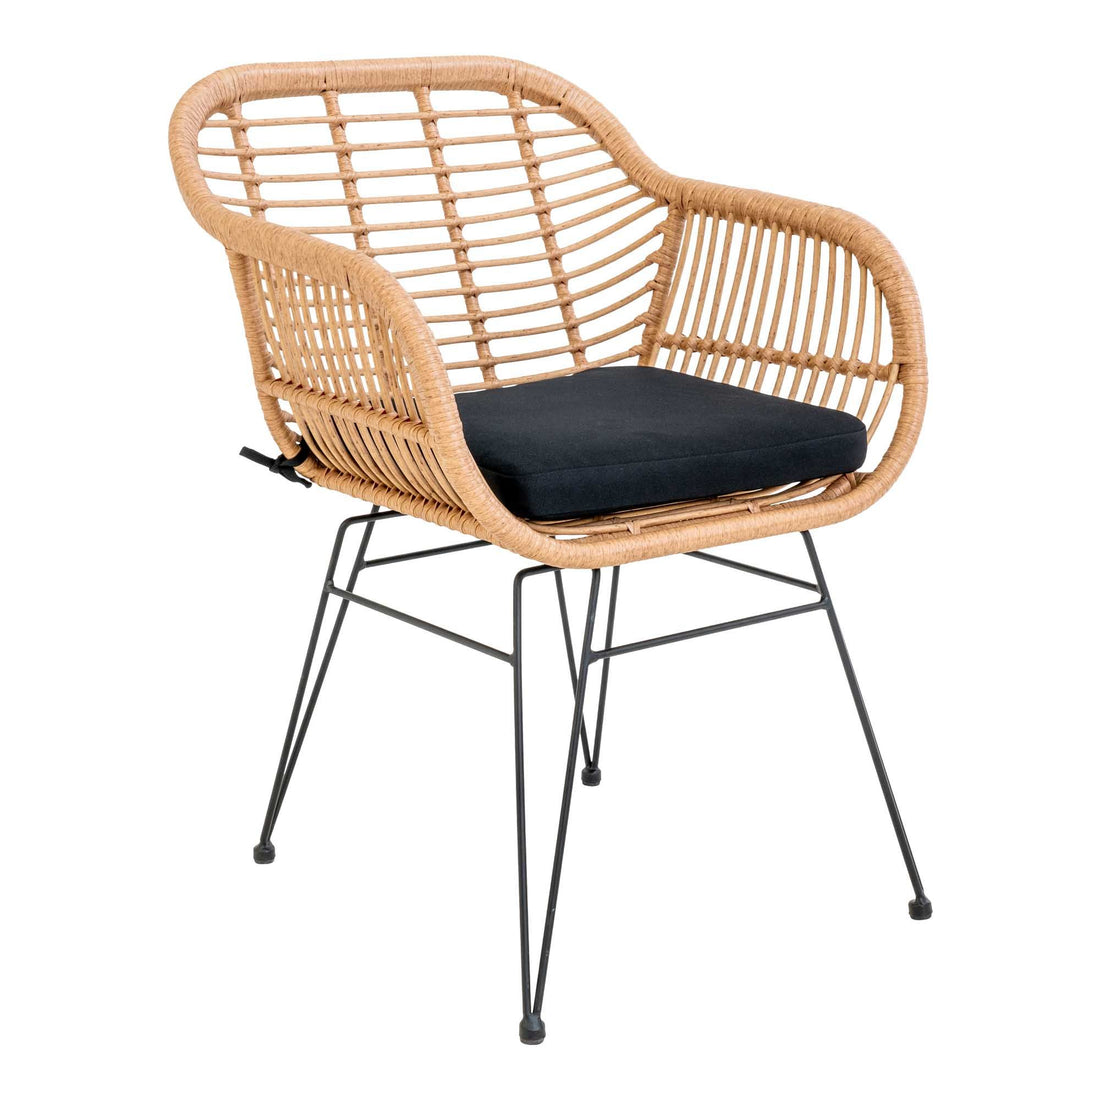 Trieste chair - chair in natural polyrattan with cushion - 2 - pcs